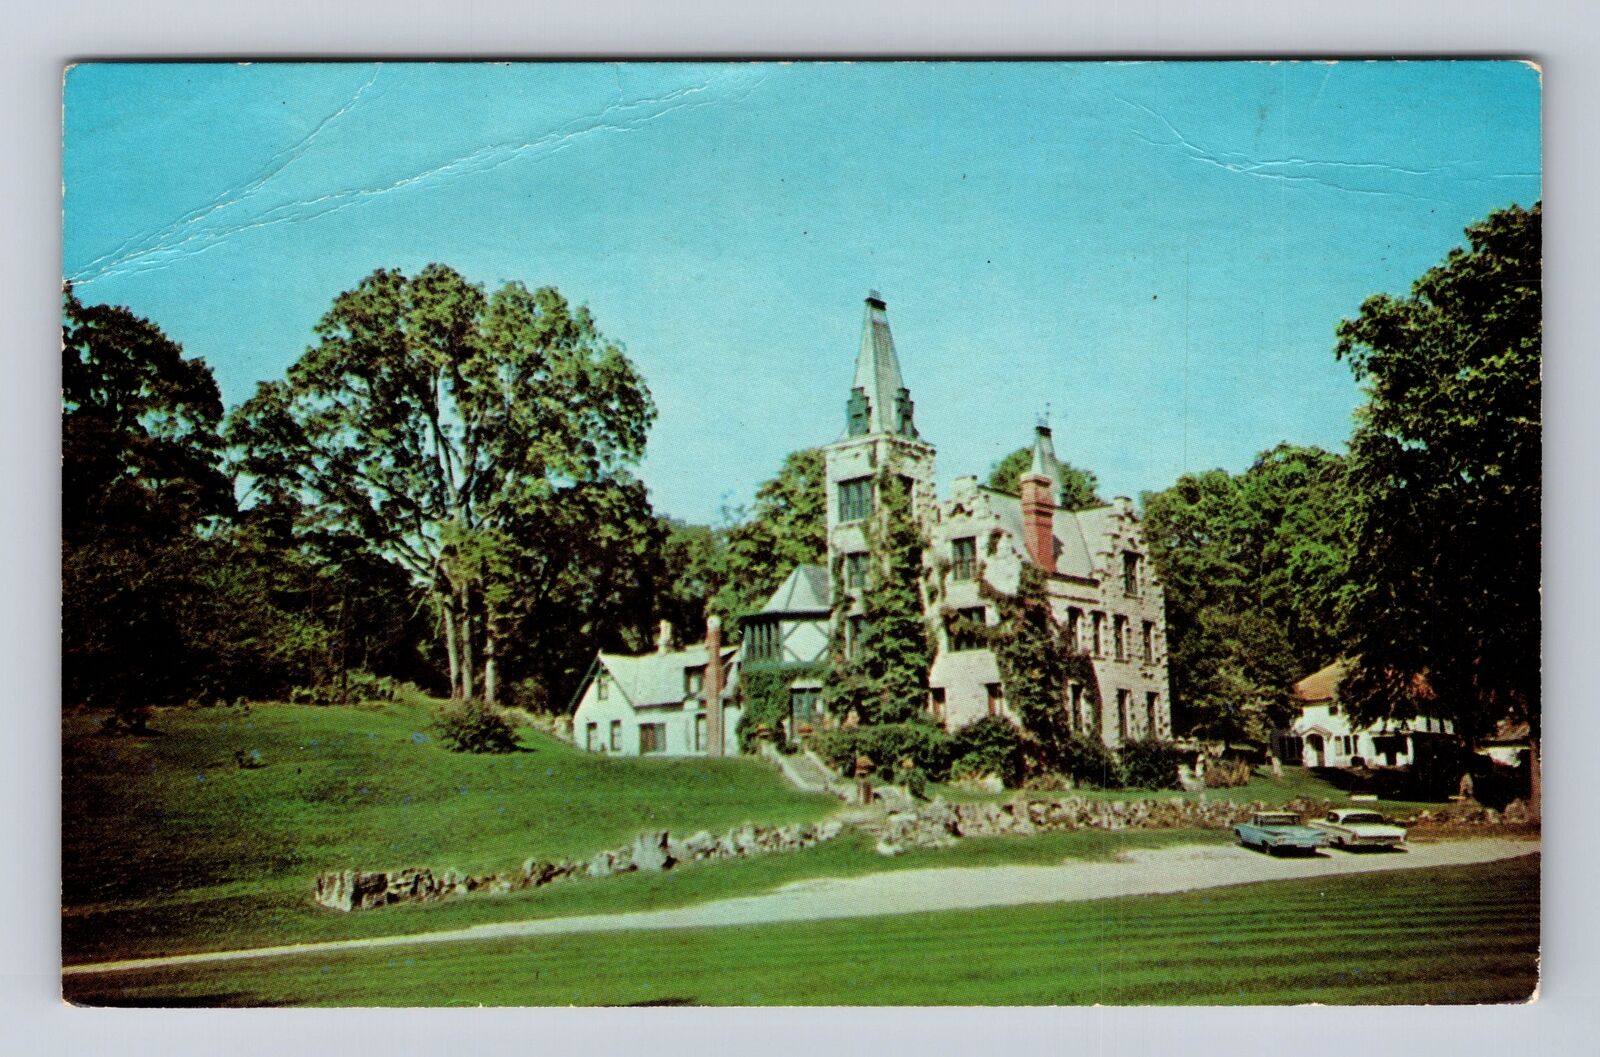 West Liberty OH-Ohio, Mac-O-Chee Castle, Antique, Vintage Souvenir Postcard